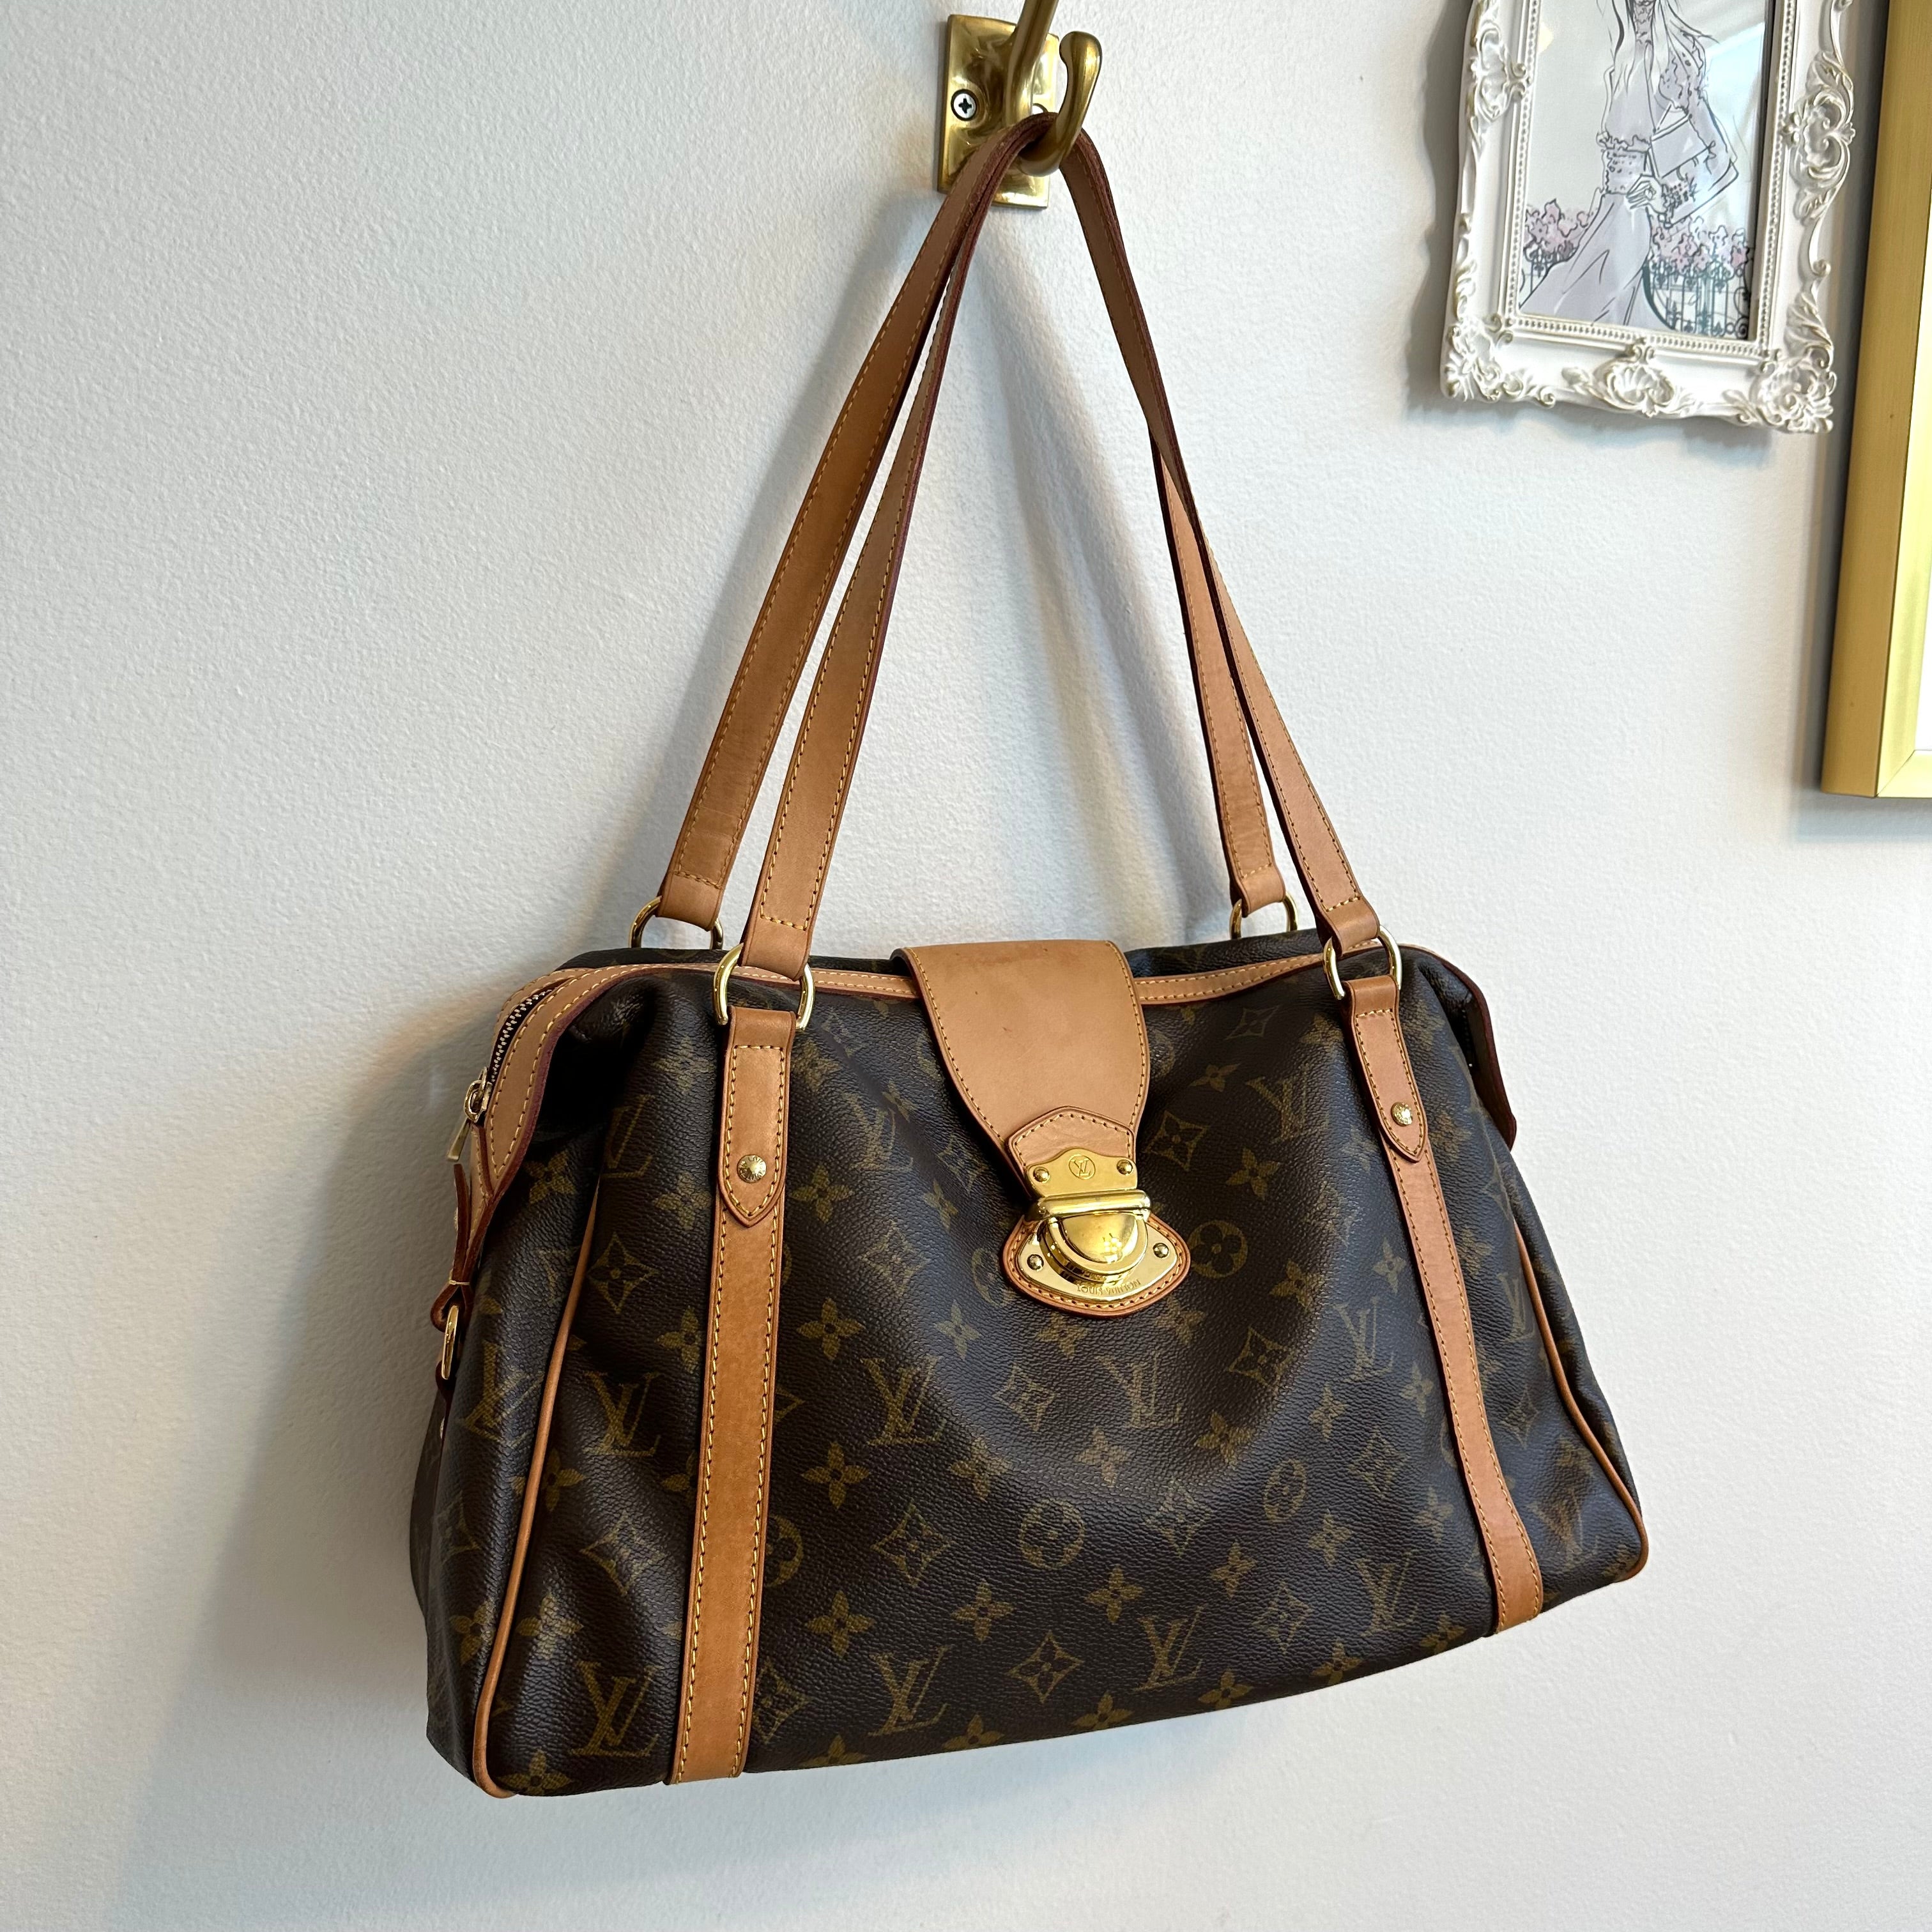 Stresa Louis Vuitton Handbags for Women - Vestiaire Collective